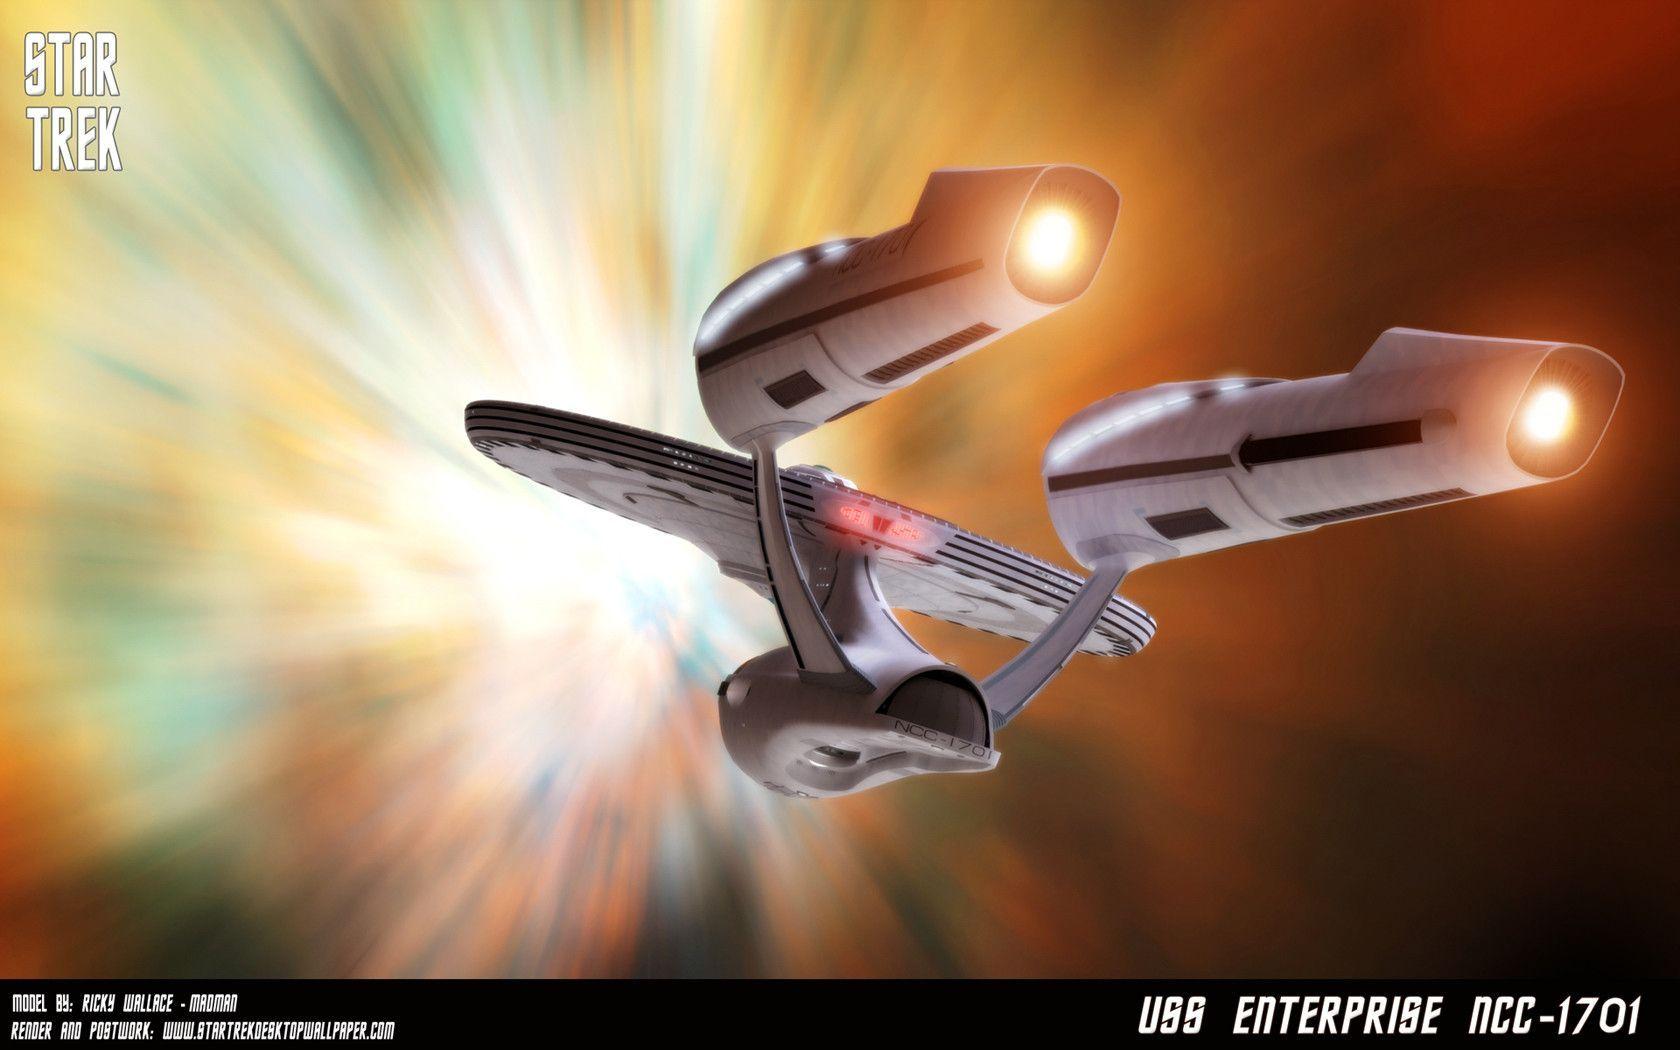 Star Trek Enterprise NCC 1701 Traveling At Warp Speed, free Star